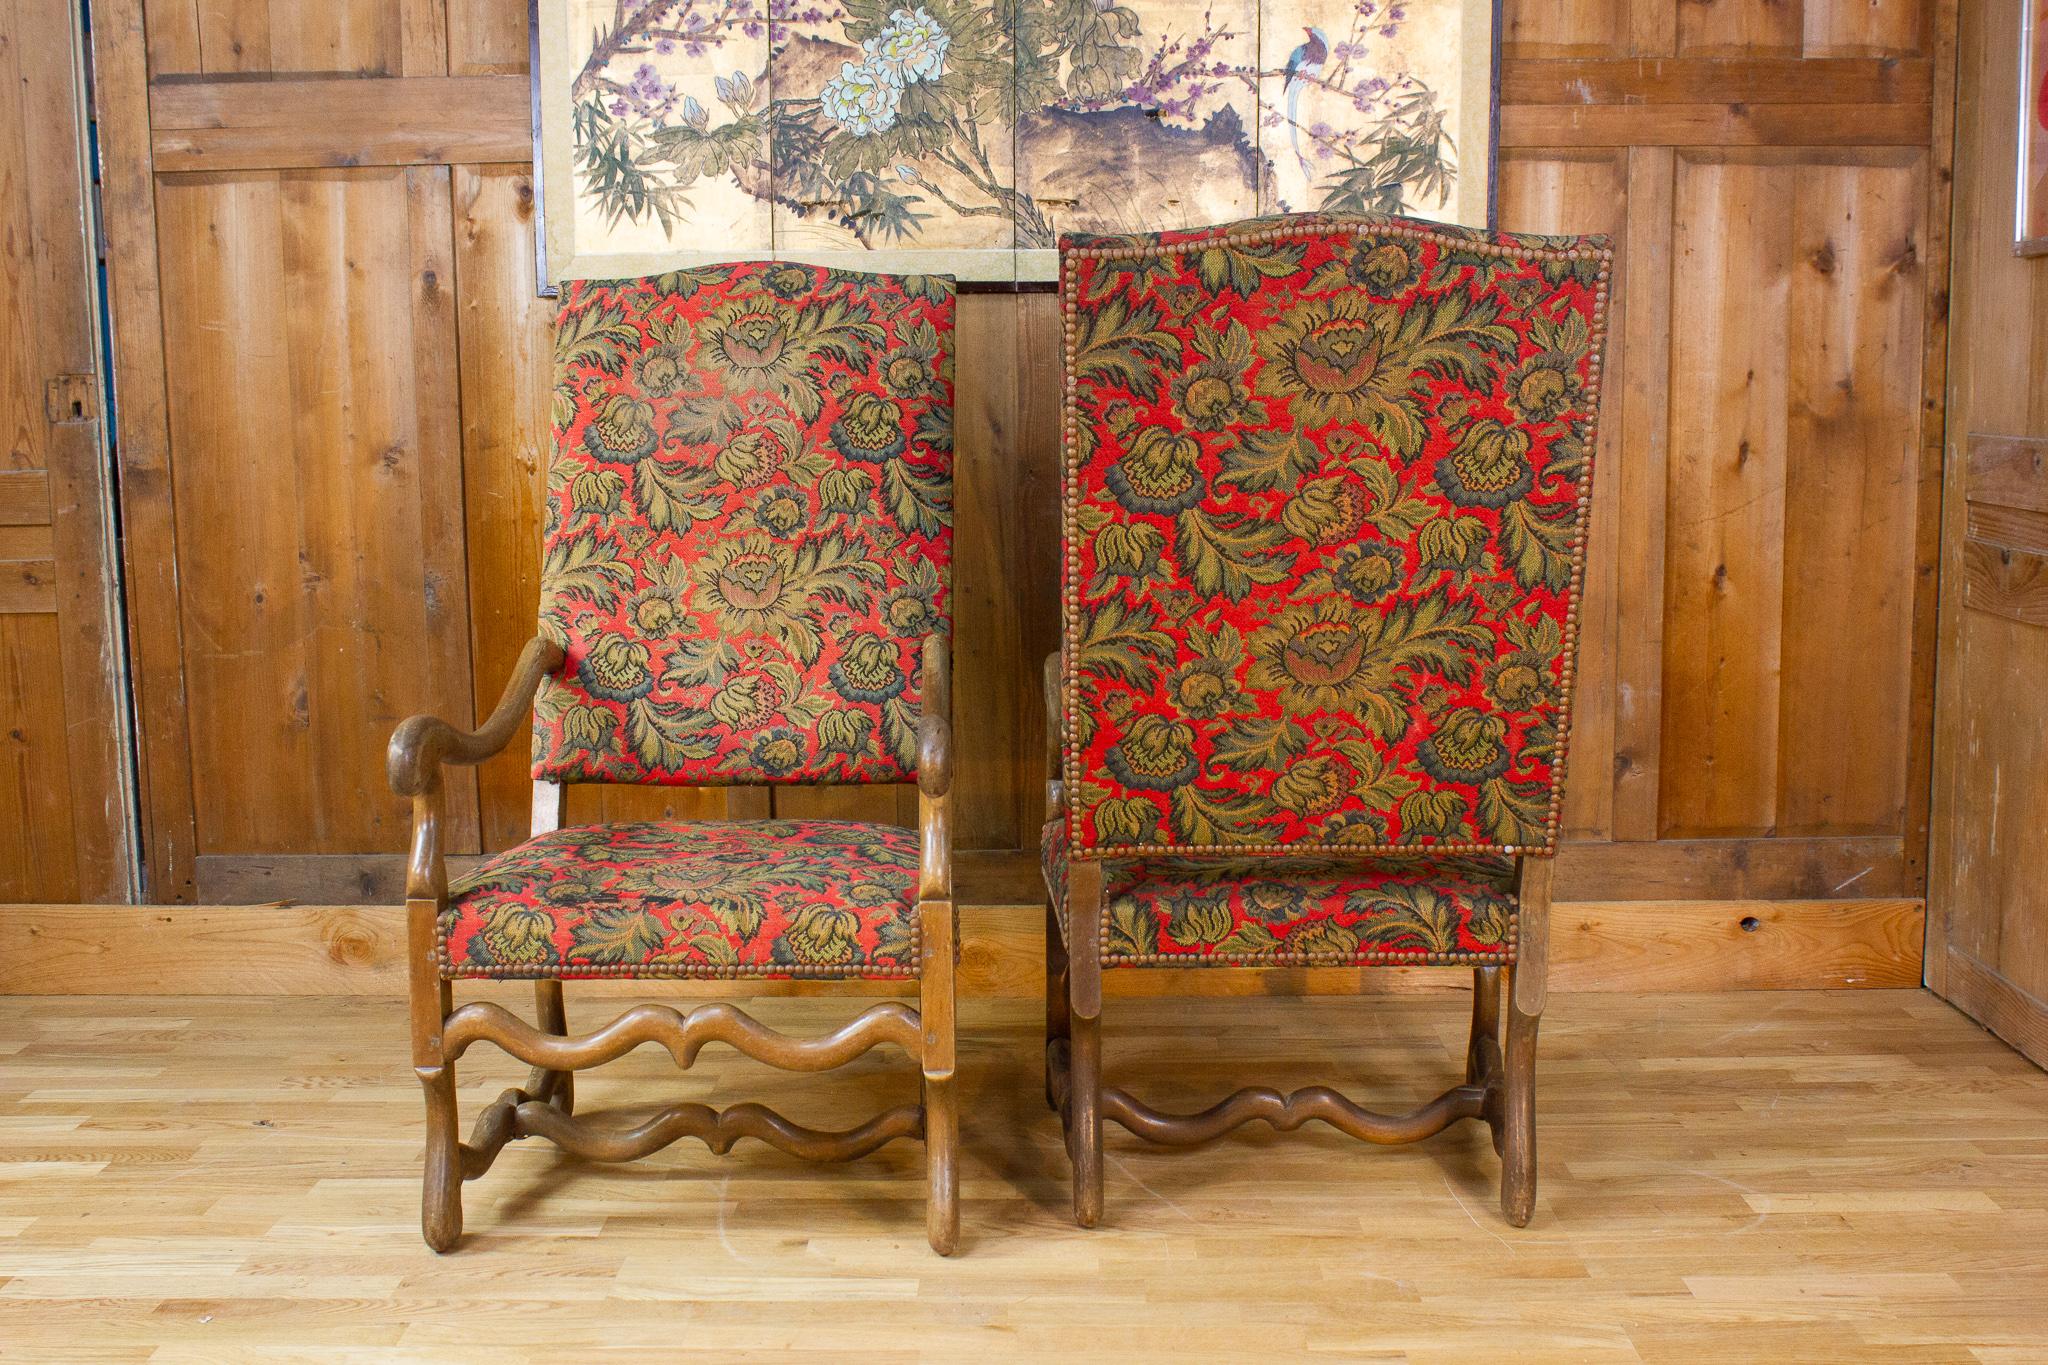 Belle paire de fauteuils de style Louis 14 datant du 19ème siècle.
Très belle paire de fauteuils de style Louis XIII, à haut dossier.
Chaque fauteuil repose sur quatre pieds reliés entre eux par un entrejambe dit 